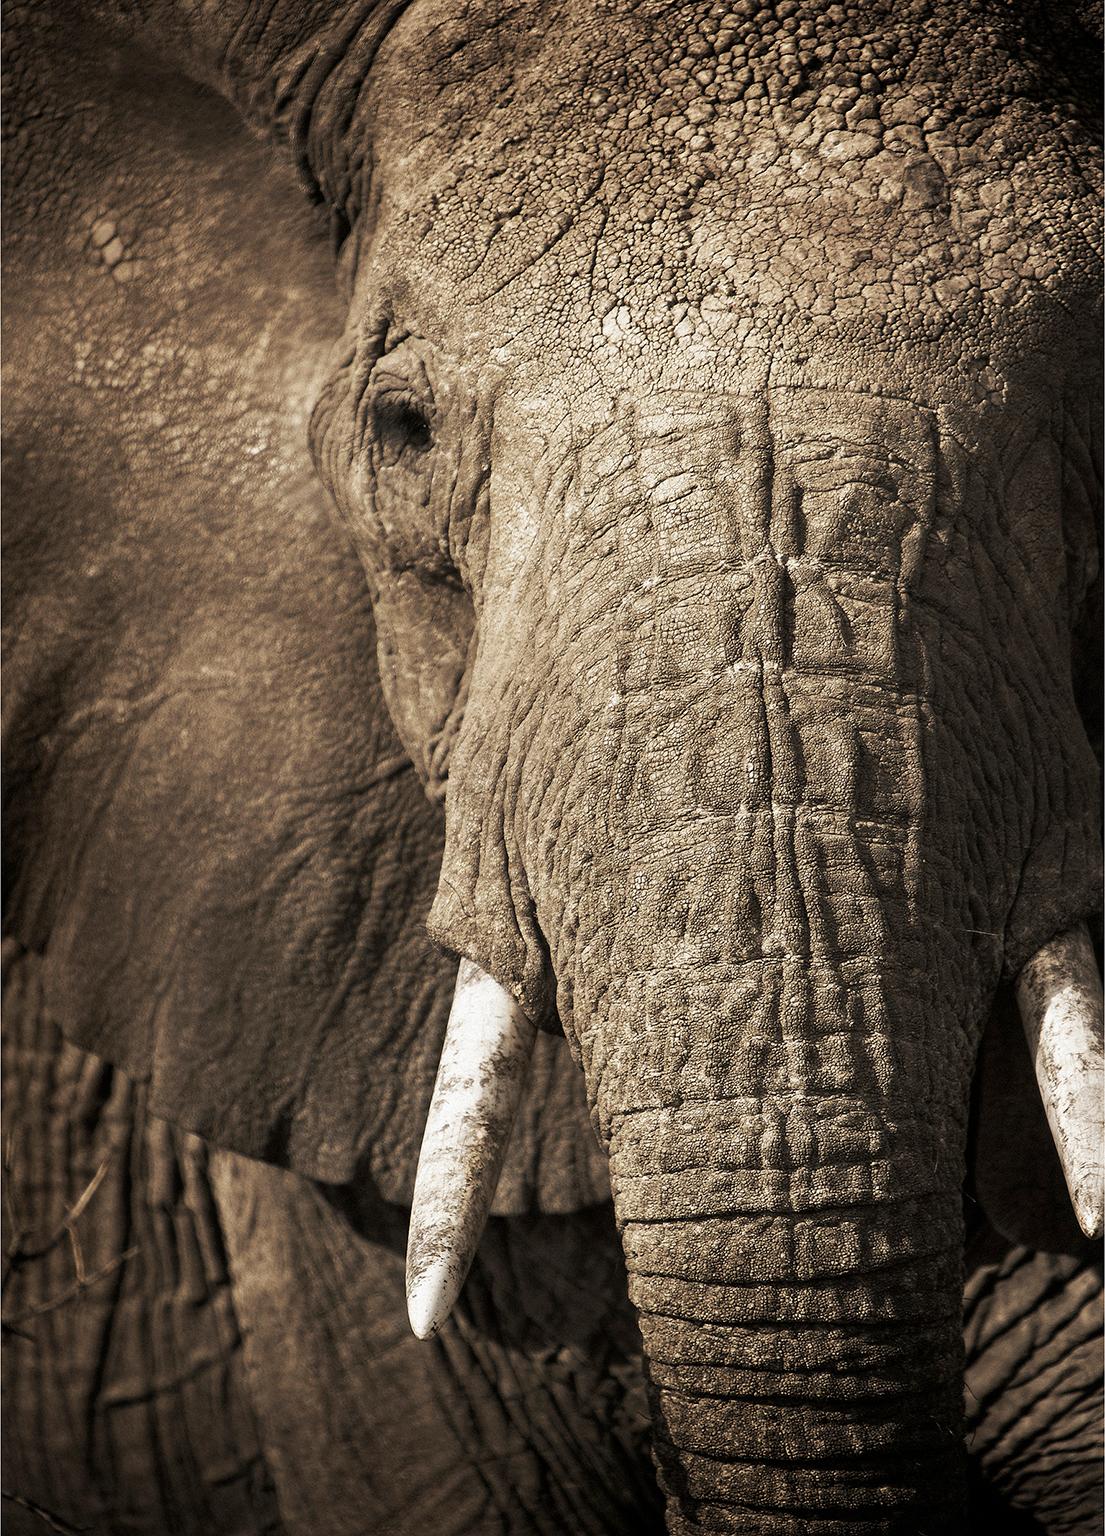 Elephant-04, Namibia. (Schwarz), Black and White Photograph, von Chris Gordaneer